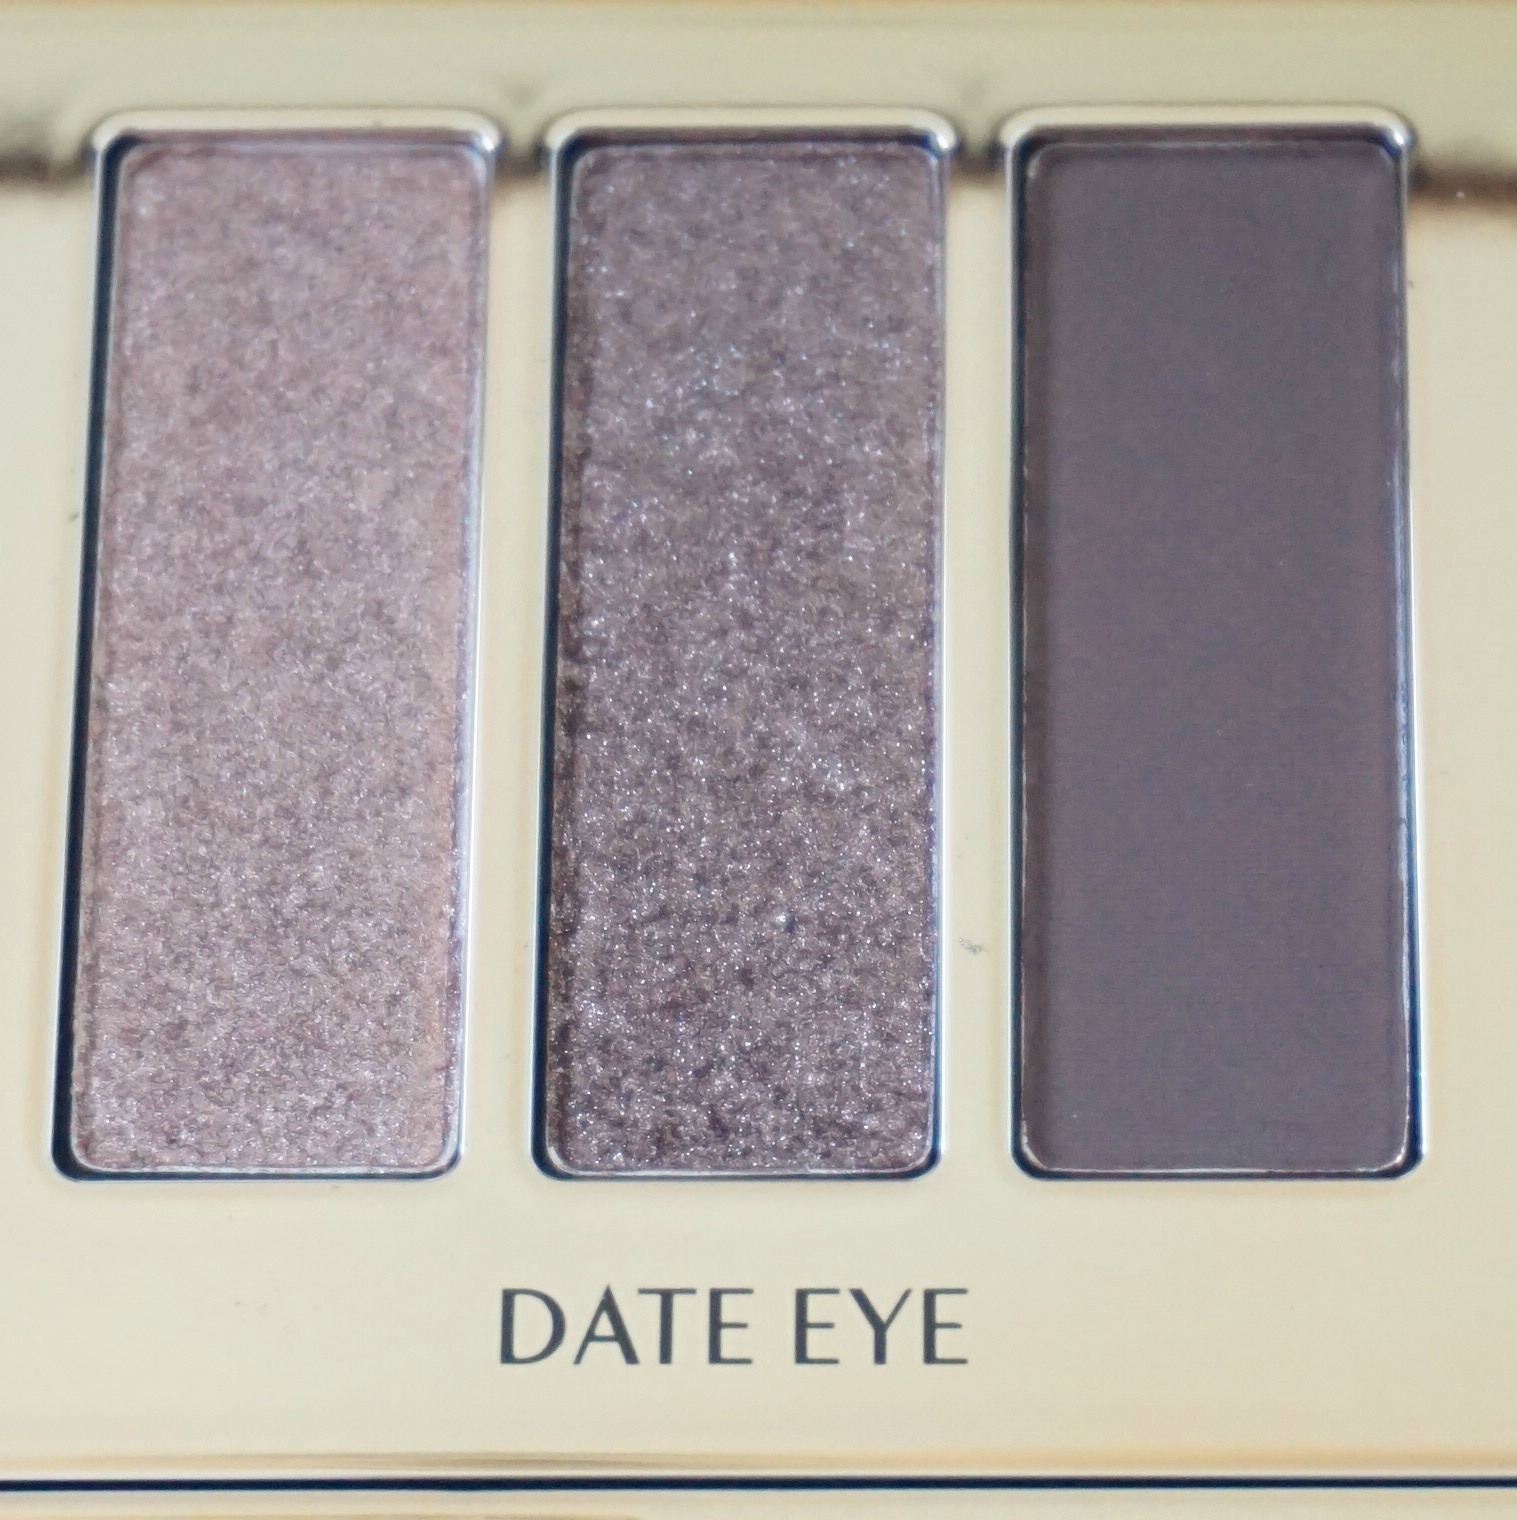 Charlotte Tilbury Date Eye, Instant Eye Palette, Review